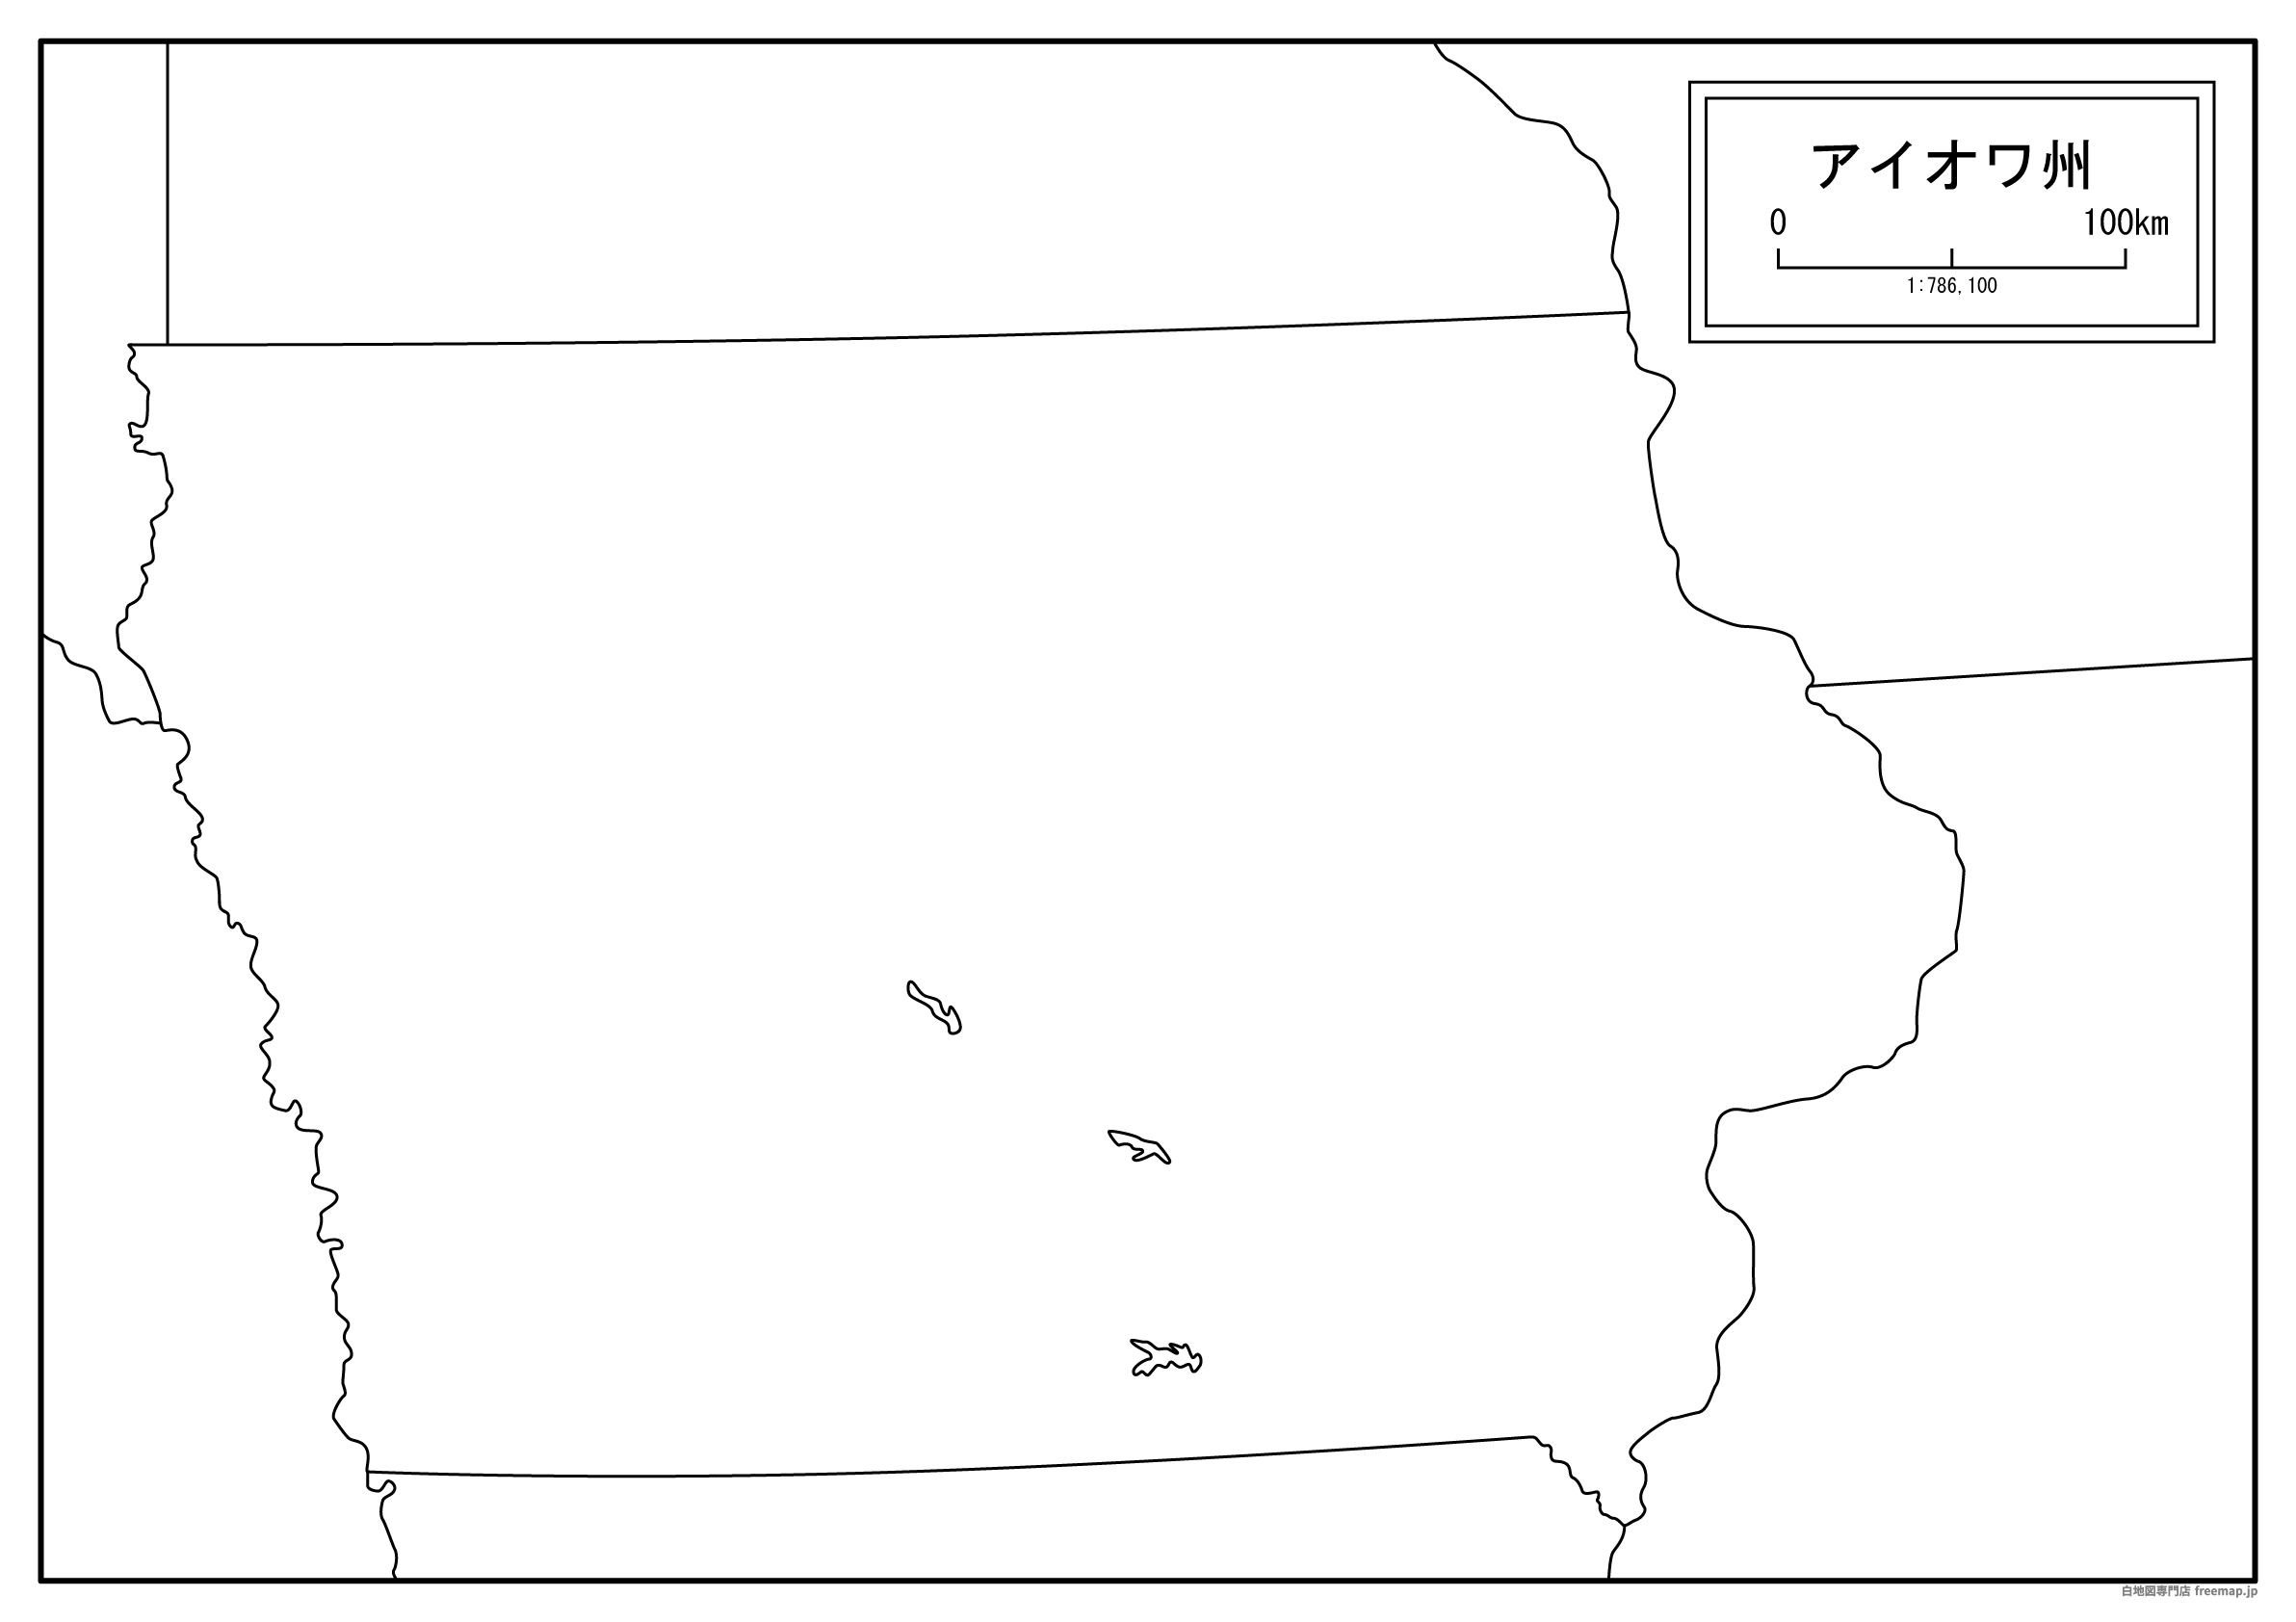 アイオワ州の地図を無料ダウンロードdownload iowa's map for free of charge.